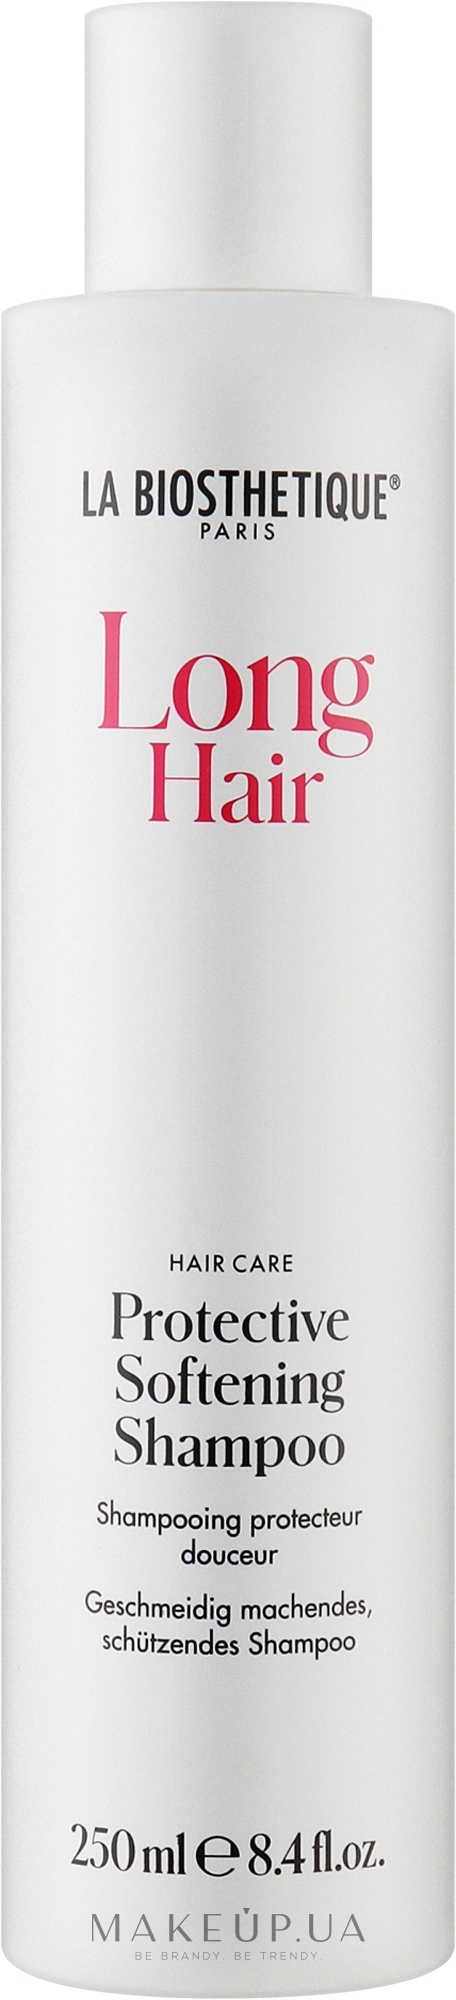 Защитный смягчающий шампунь - La Biosthetique Long Hair Protective Softening Shampoo — фото 250ml